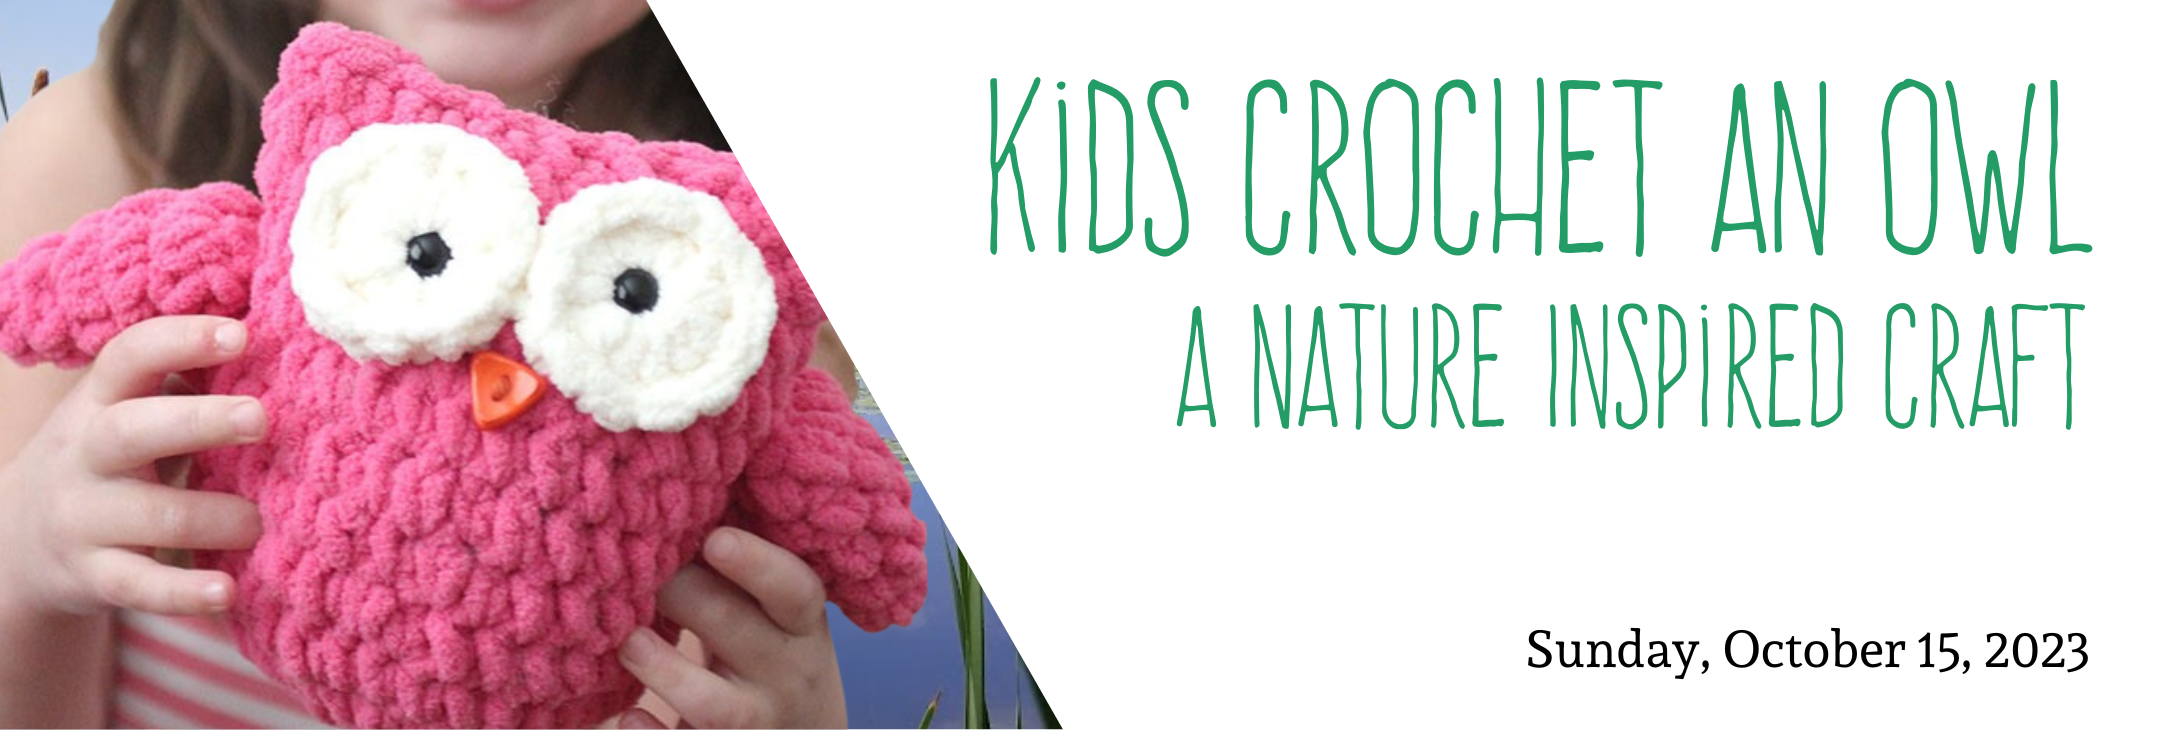 Kids crochet an owl